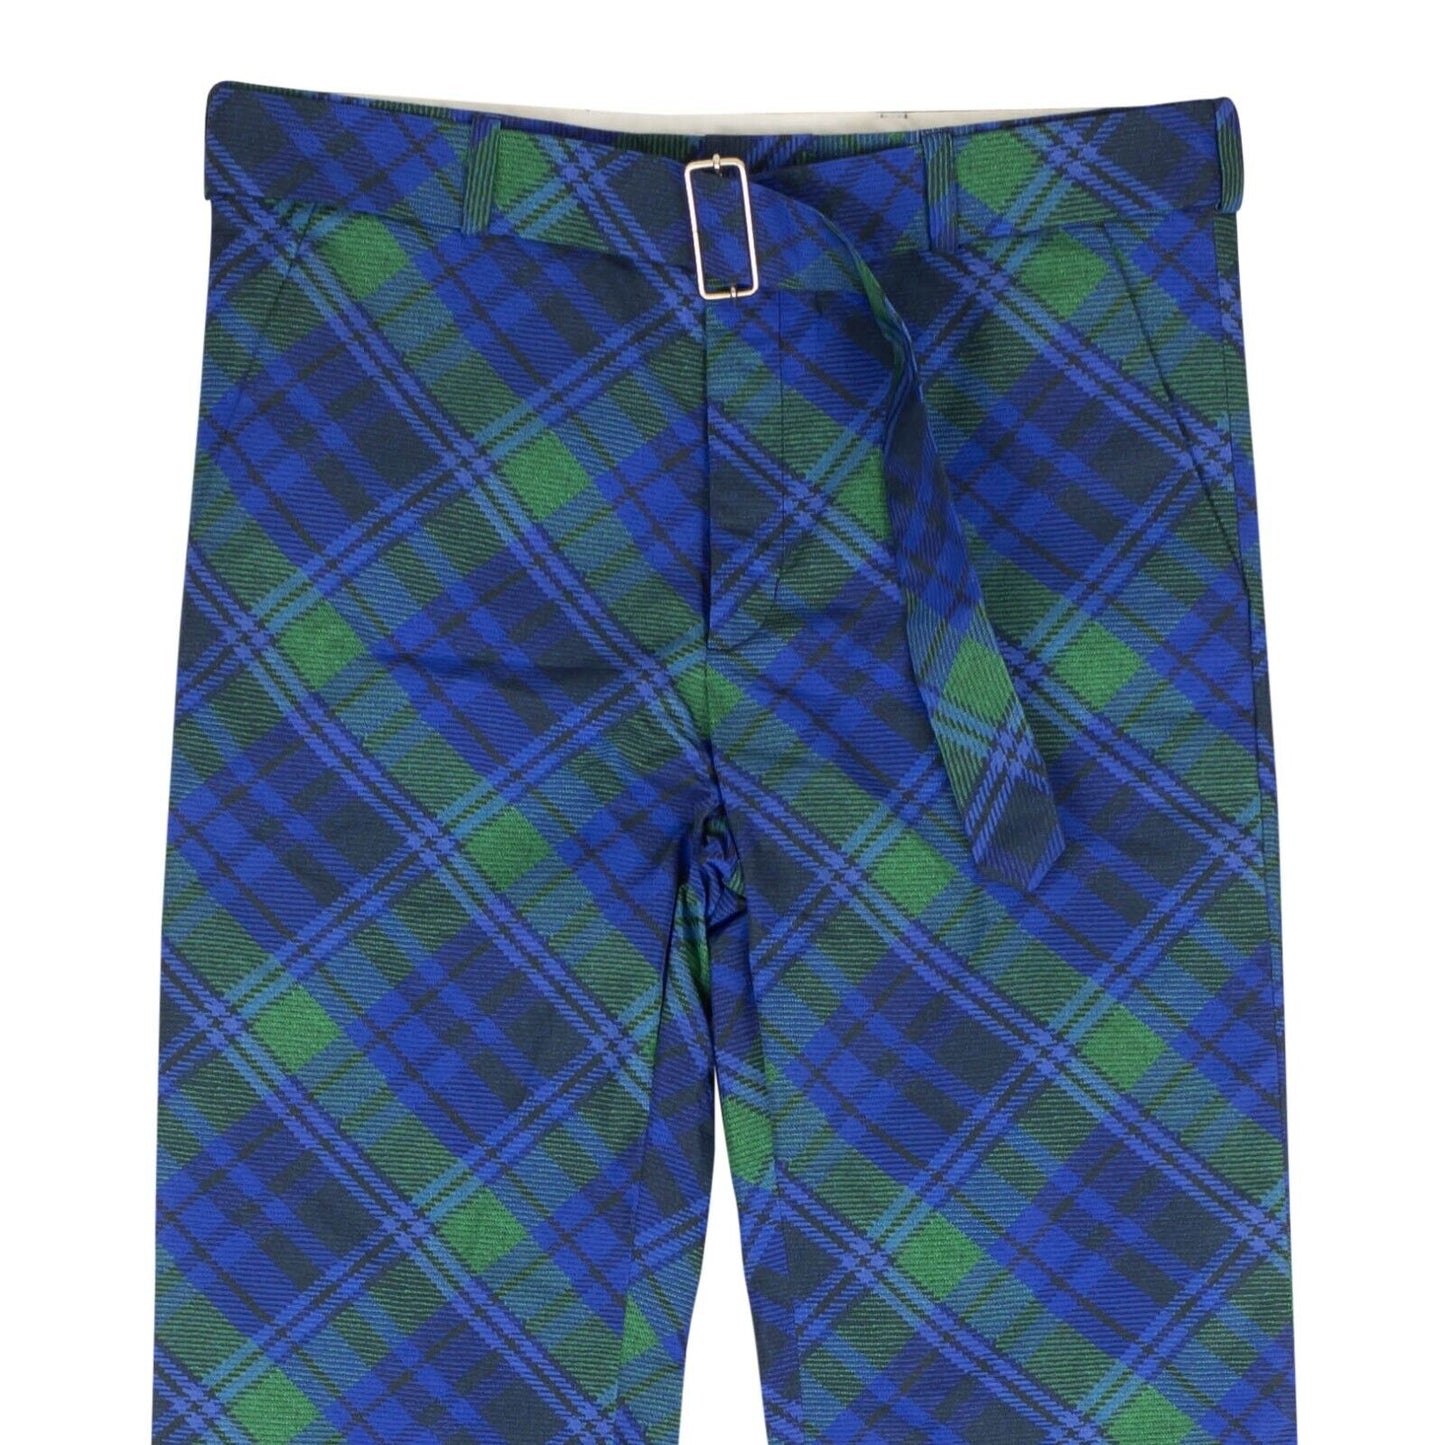 Stefan Cooke Studded Tartan Print Trousers - Blue/Green